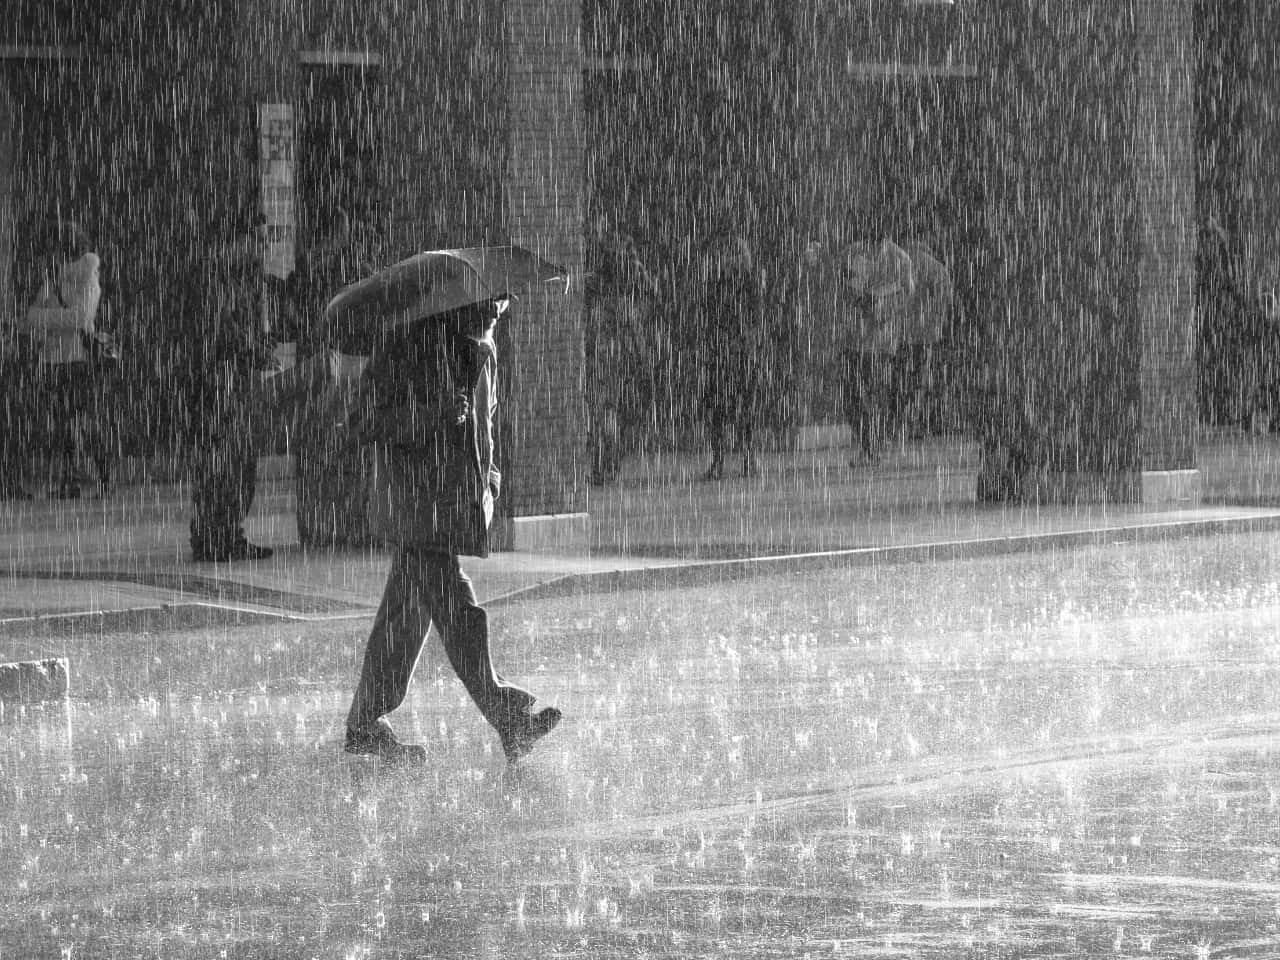 Uomocon Ombrello In Una Giornata Di Pioggia In Una Foto In Bianco E Nero.